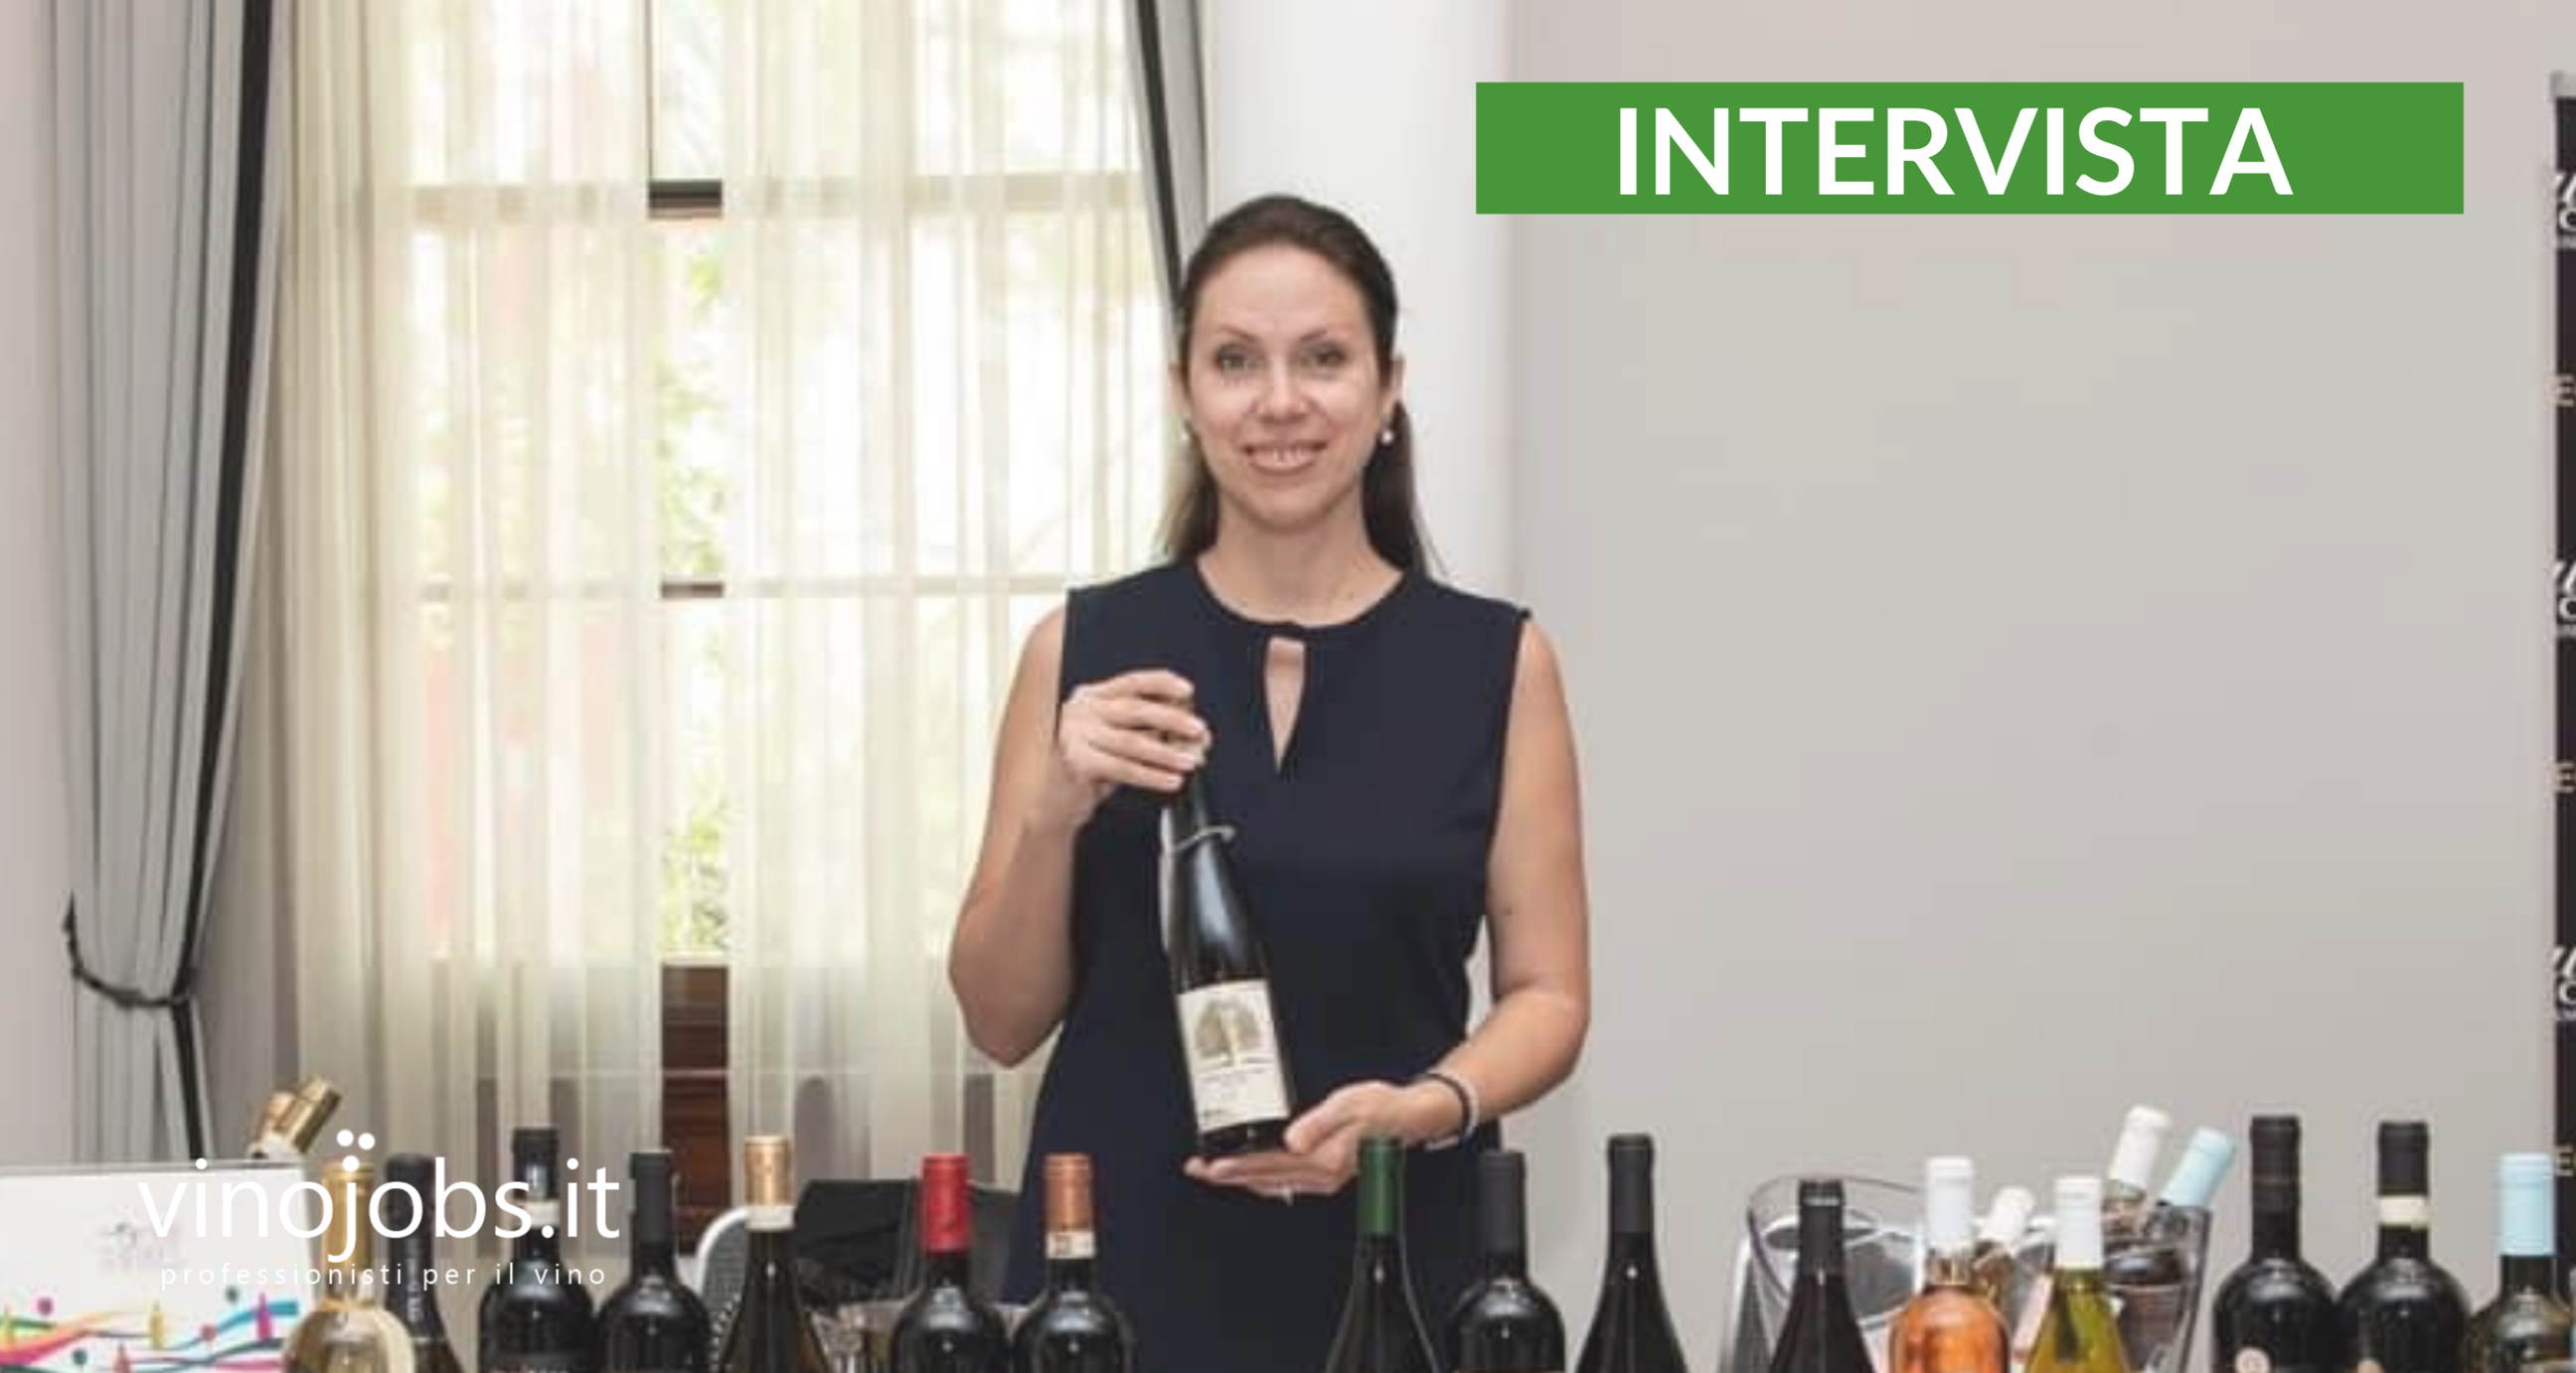 Intervista – Mihaela Cojocaru racconta come ha trovato lavoro tramite vinojobs.it